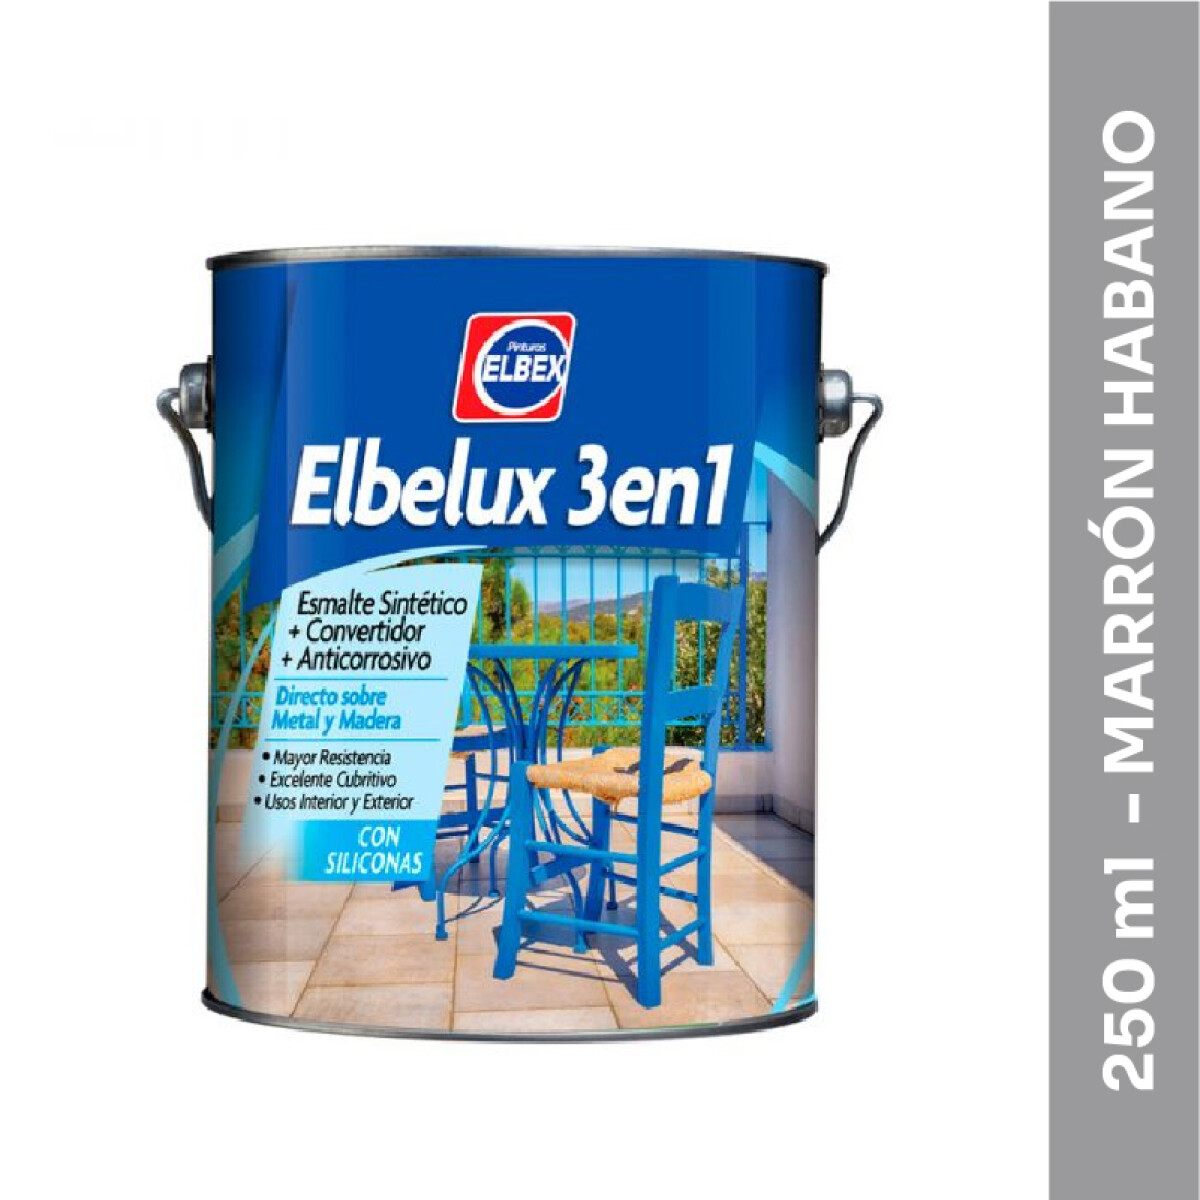 Esmalte Brillante Elbelux 3 en 1 - 250 ml - Marrón Habano 